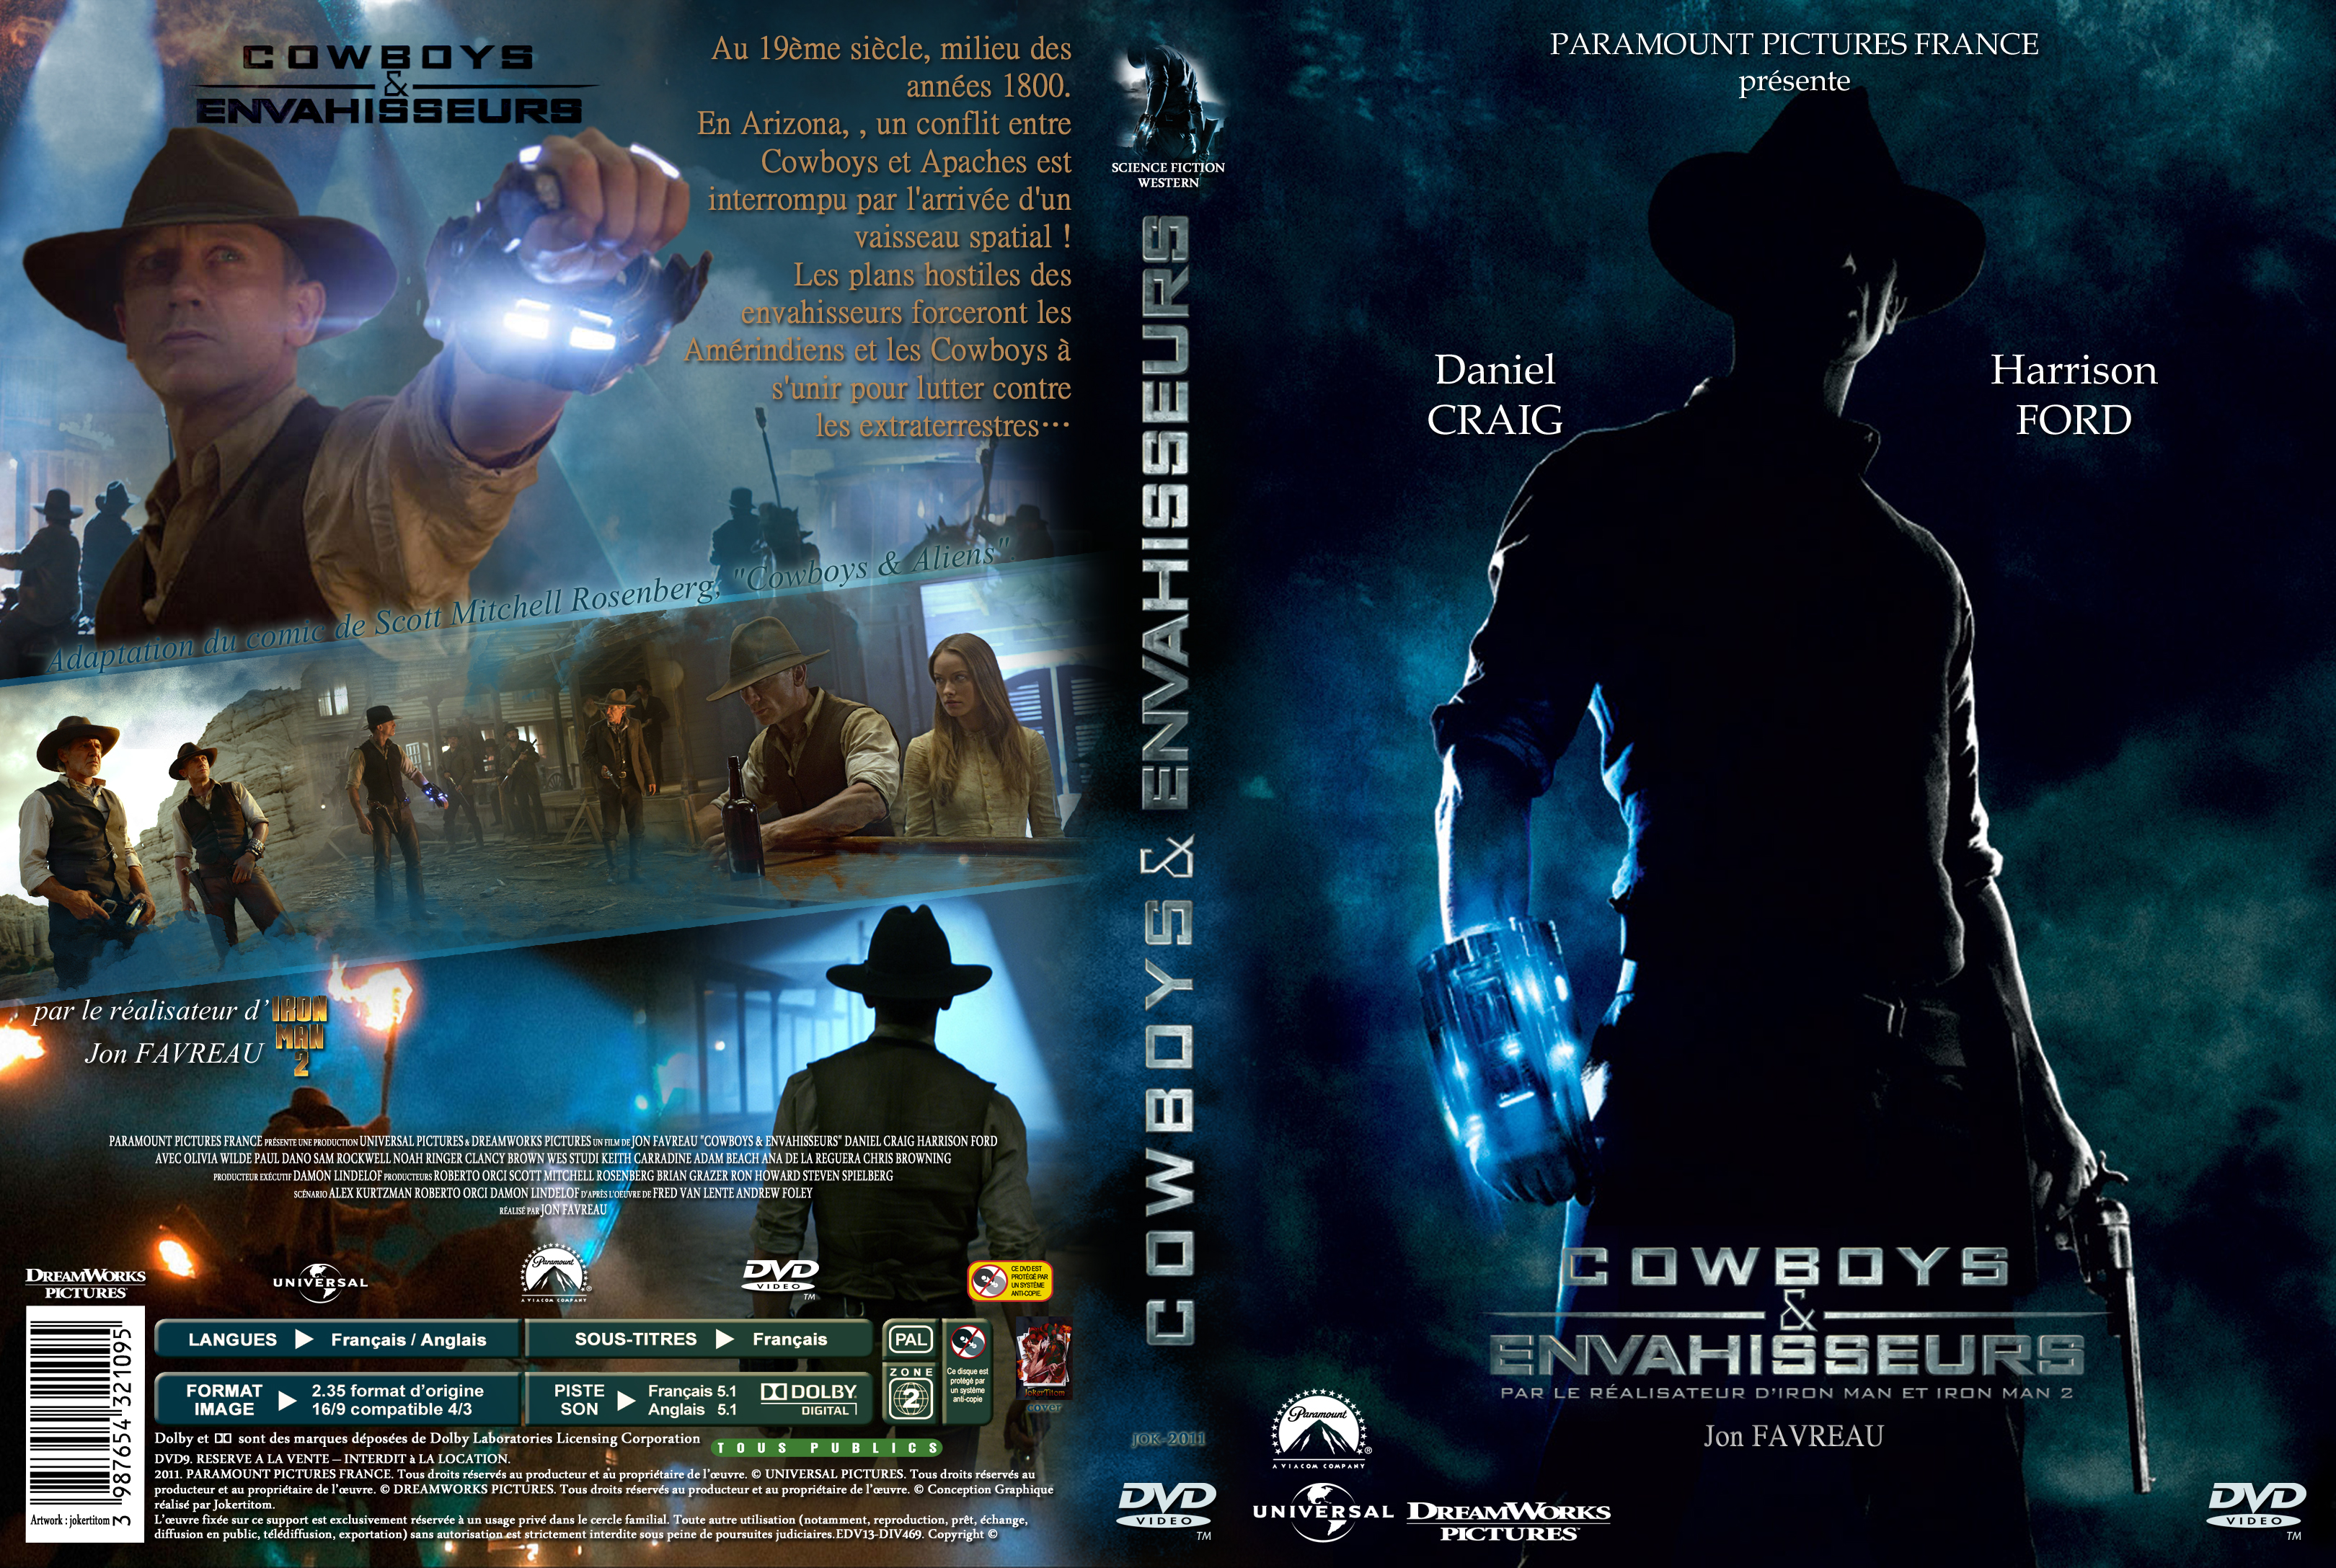 Jaquette DVD Cowboys & Envahisseurs custom